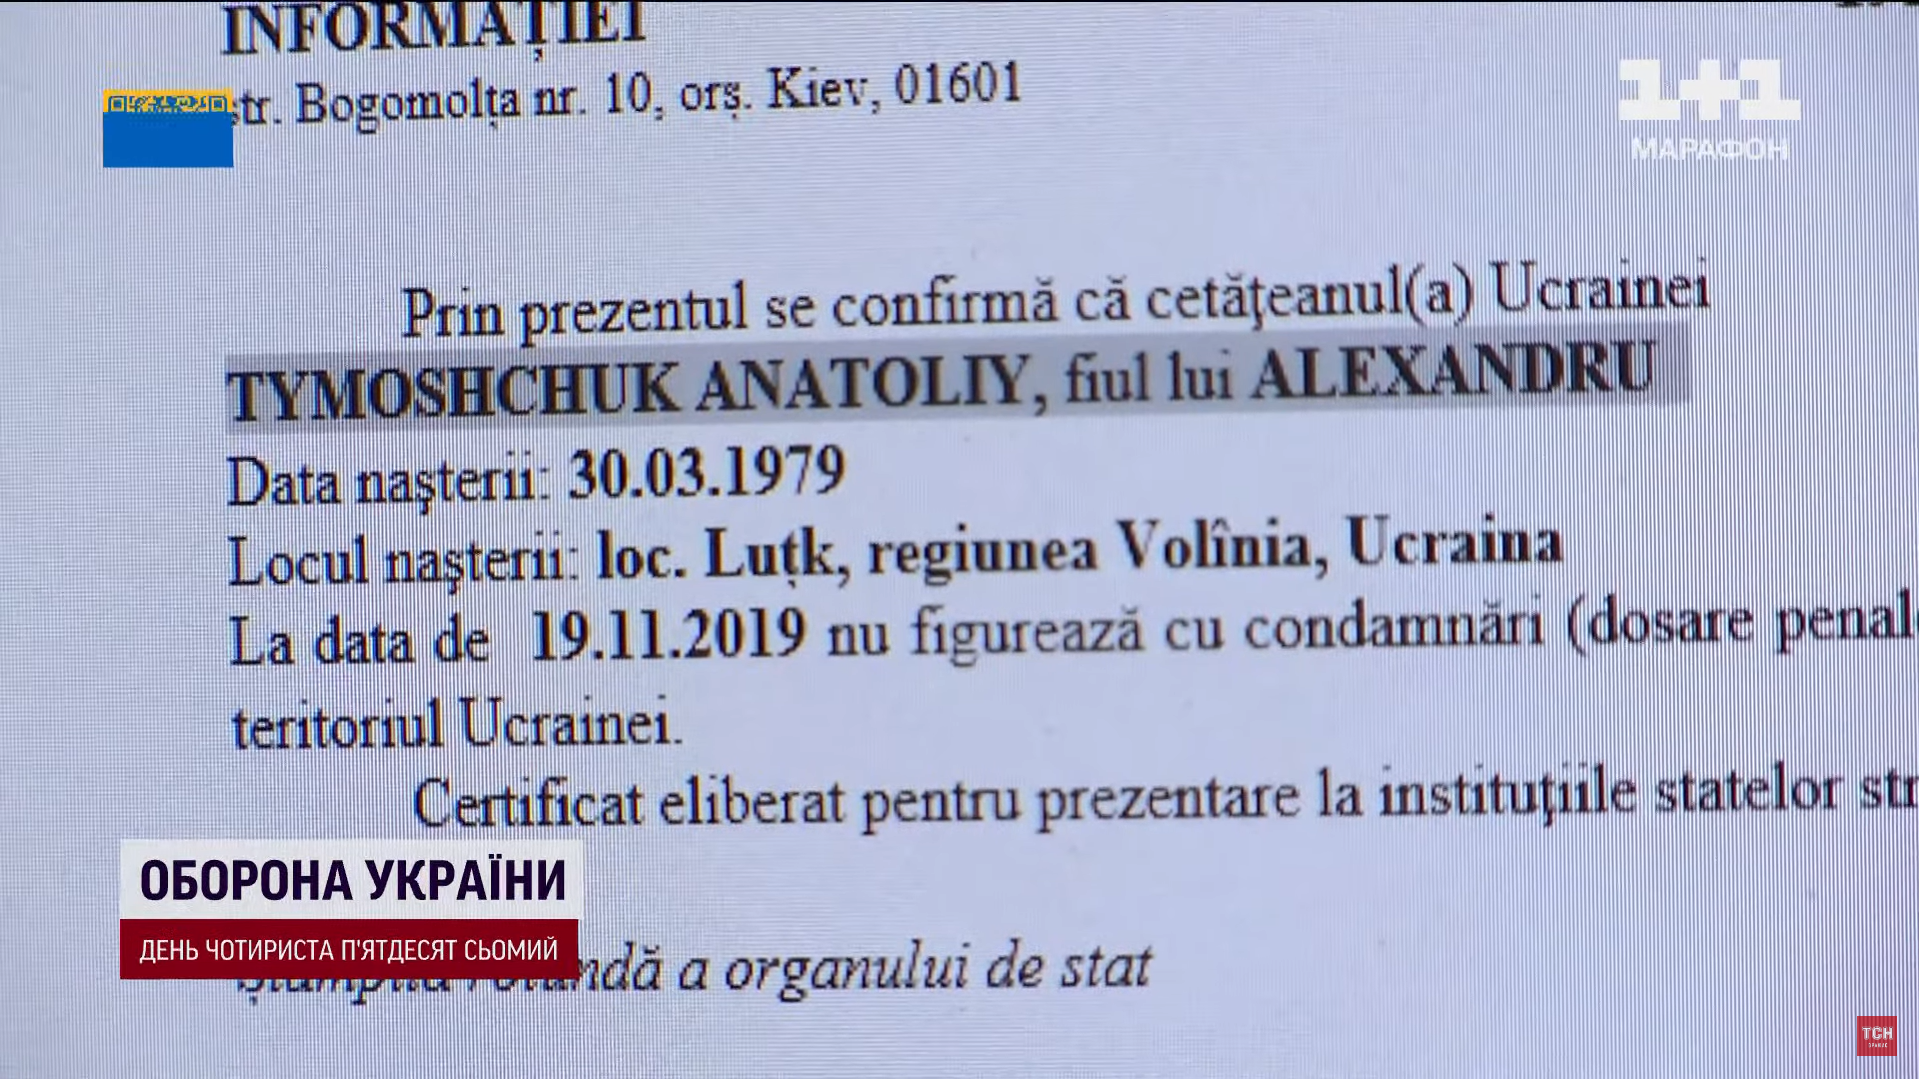 Тимощук вирішив обдурити Україну та стати громадянином Румунії, подавши підроблені документи – ЗМІ